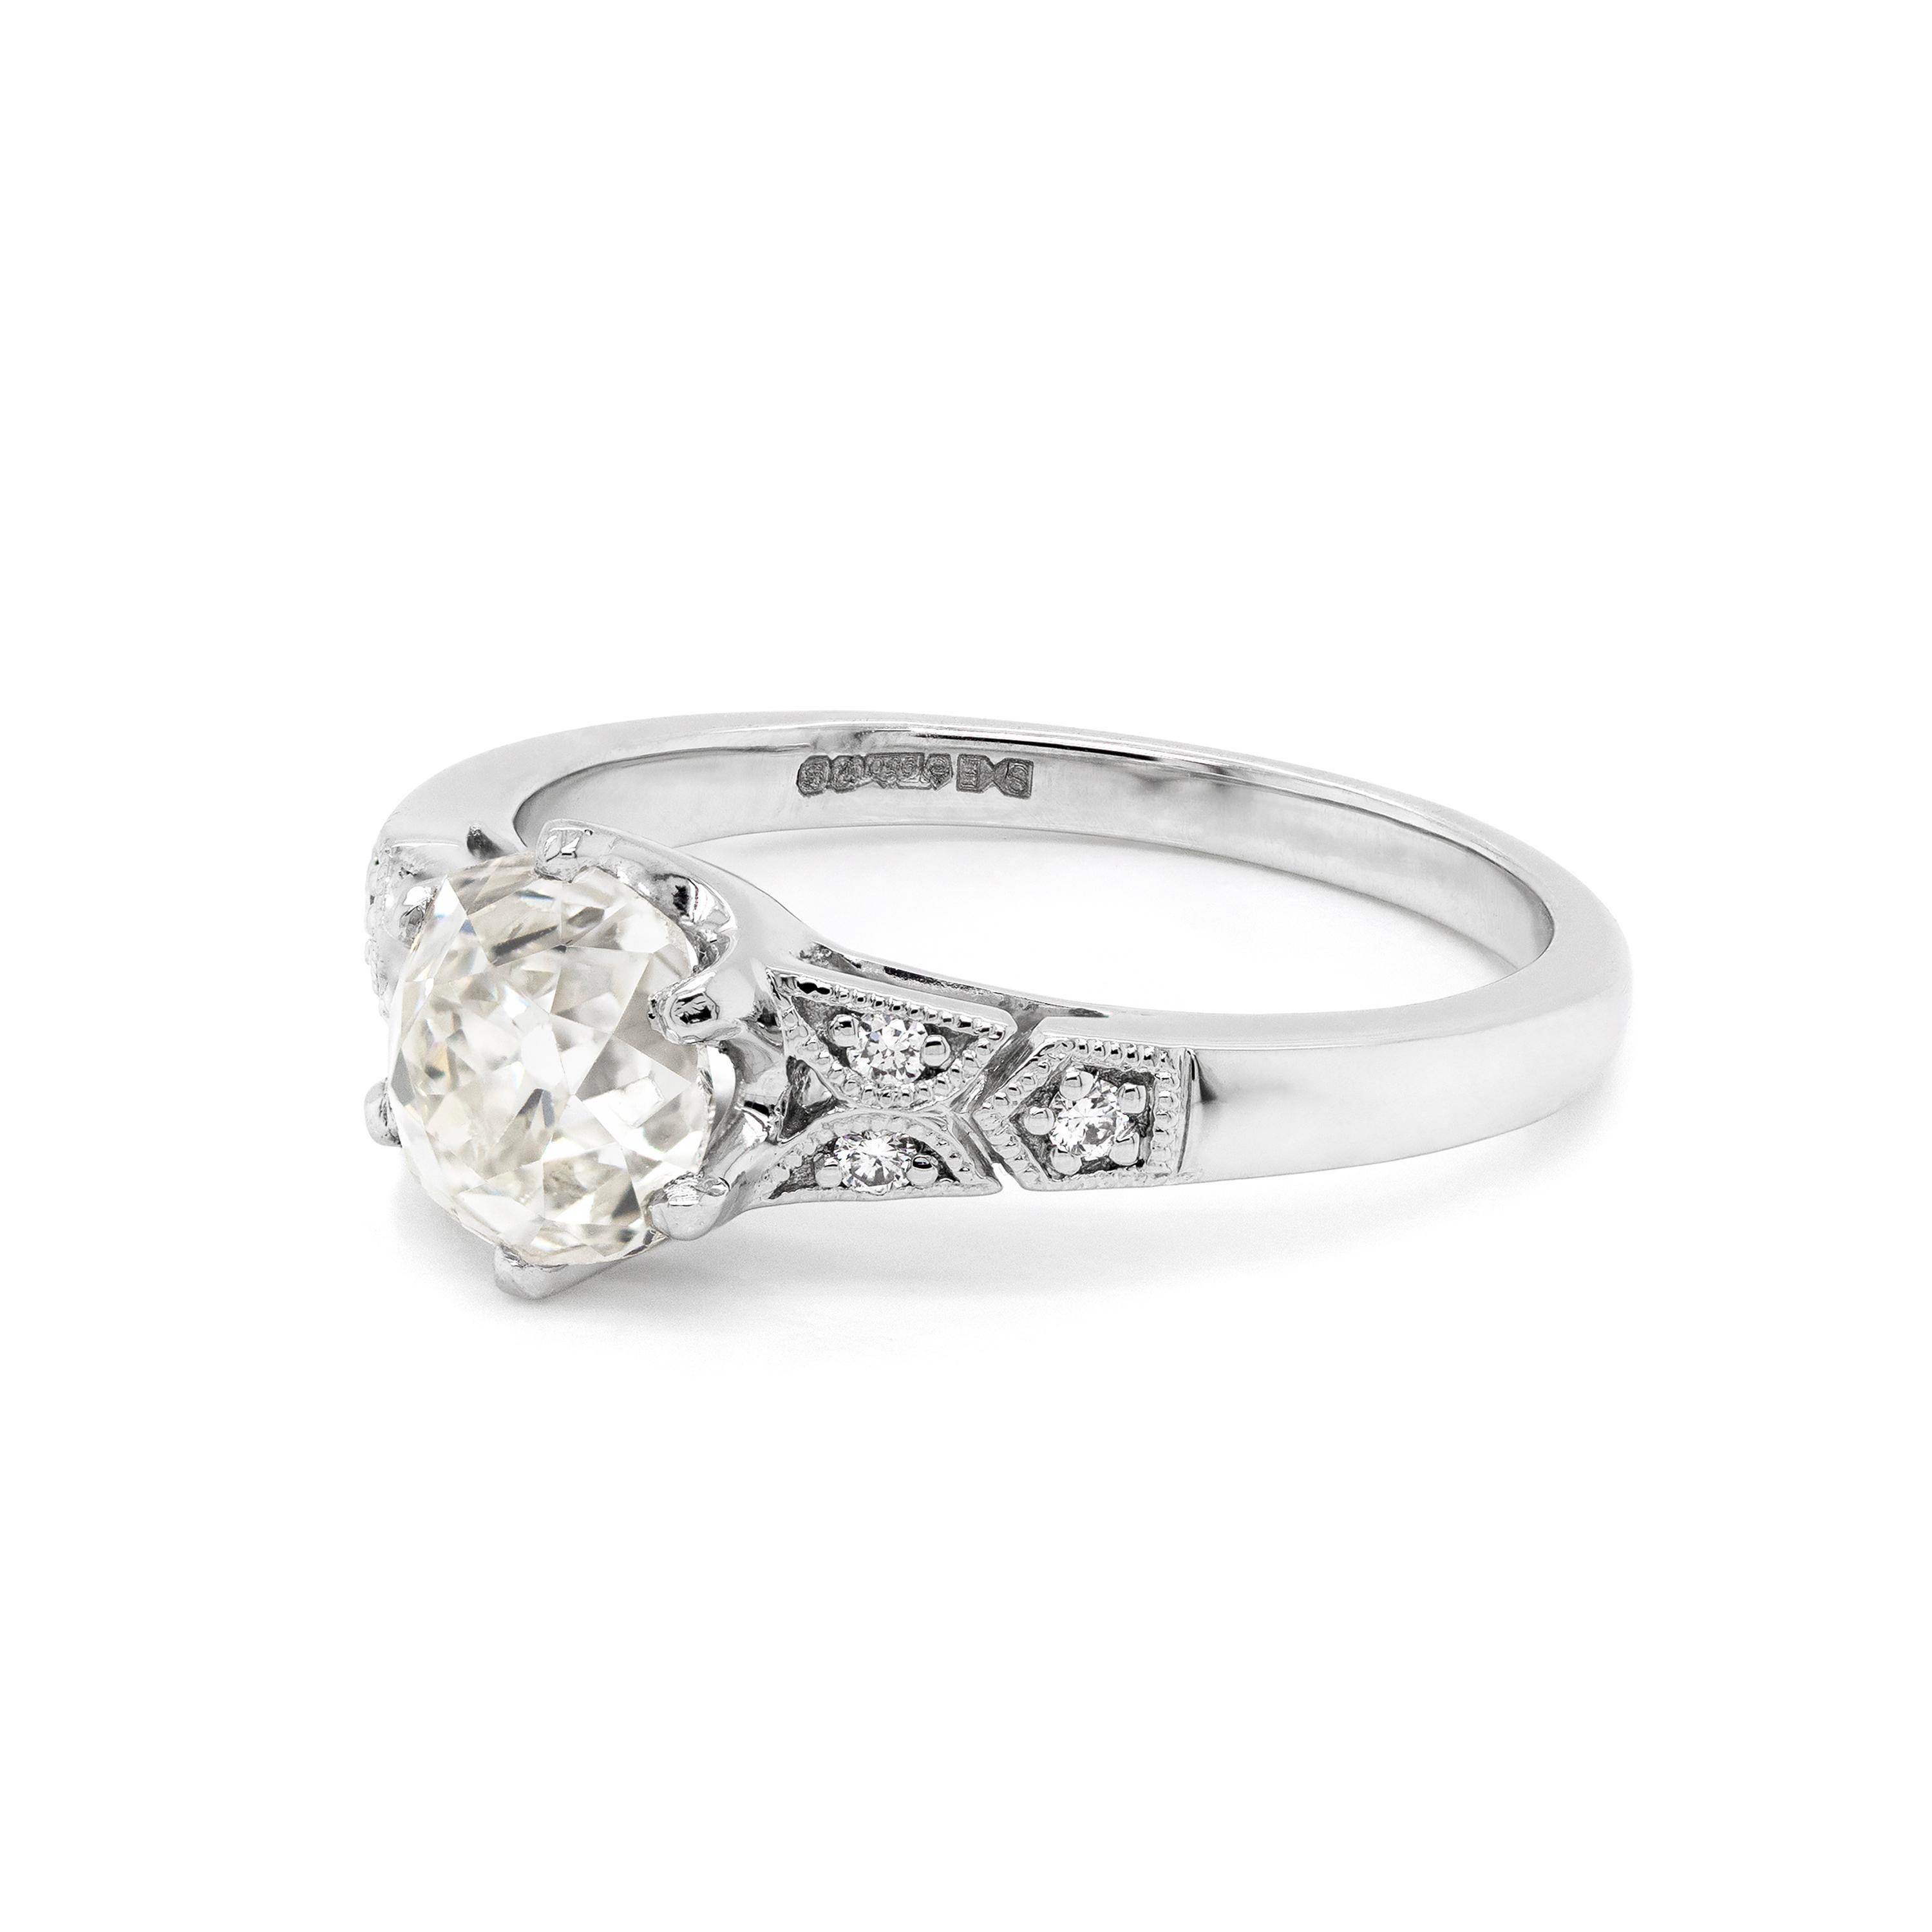 Dieser wunderschöne Verlobungsring im Art-Déco-Stil enthält einen Diamanten im Altschliff von 1,25 Karat in einer Fassung mit sechs Krallen und offener Rückseite. Der zentrale Diamant wird von drei runden Diamanten im Brillantschliff auf beiden